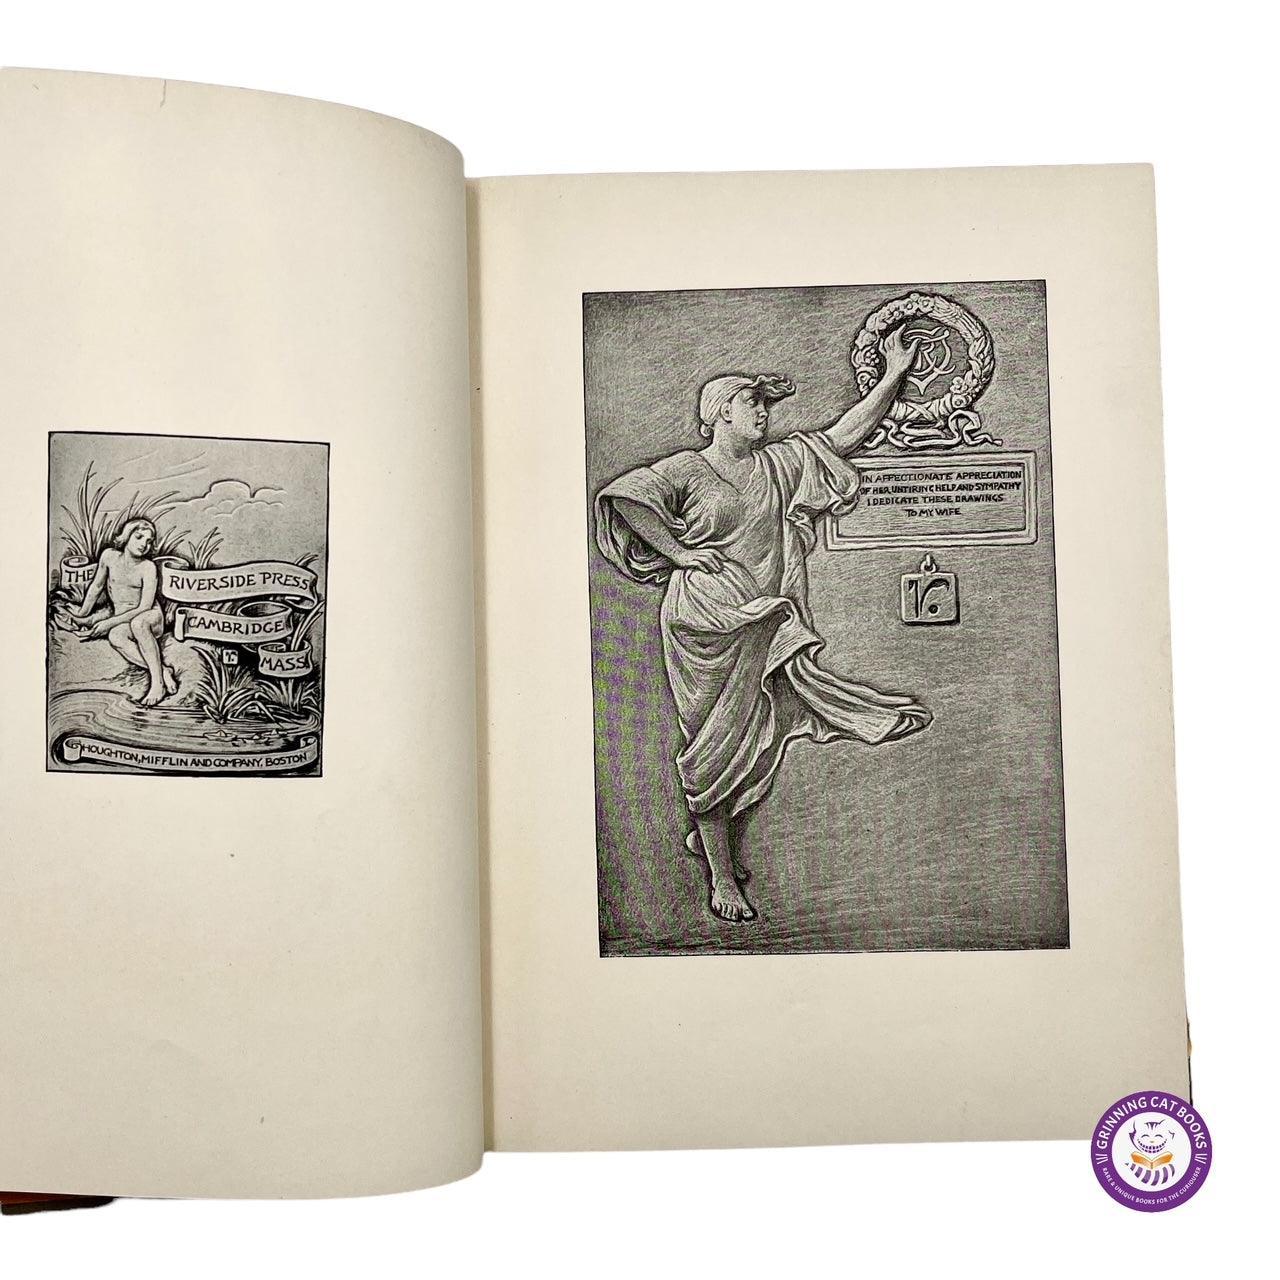 Rubaiyat of Omar Khayyam (famous "Vedder Edition," with drawings by Elihu Vedder) - Grinning Cat Books - POETRY - ART, POETRY, RUBAIYAT